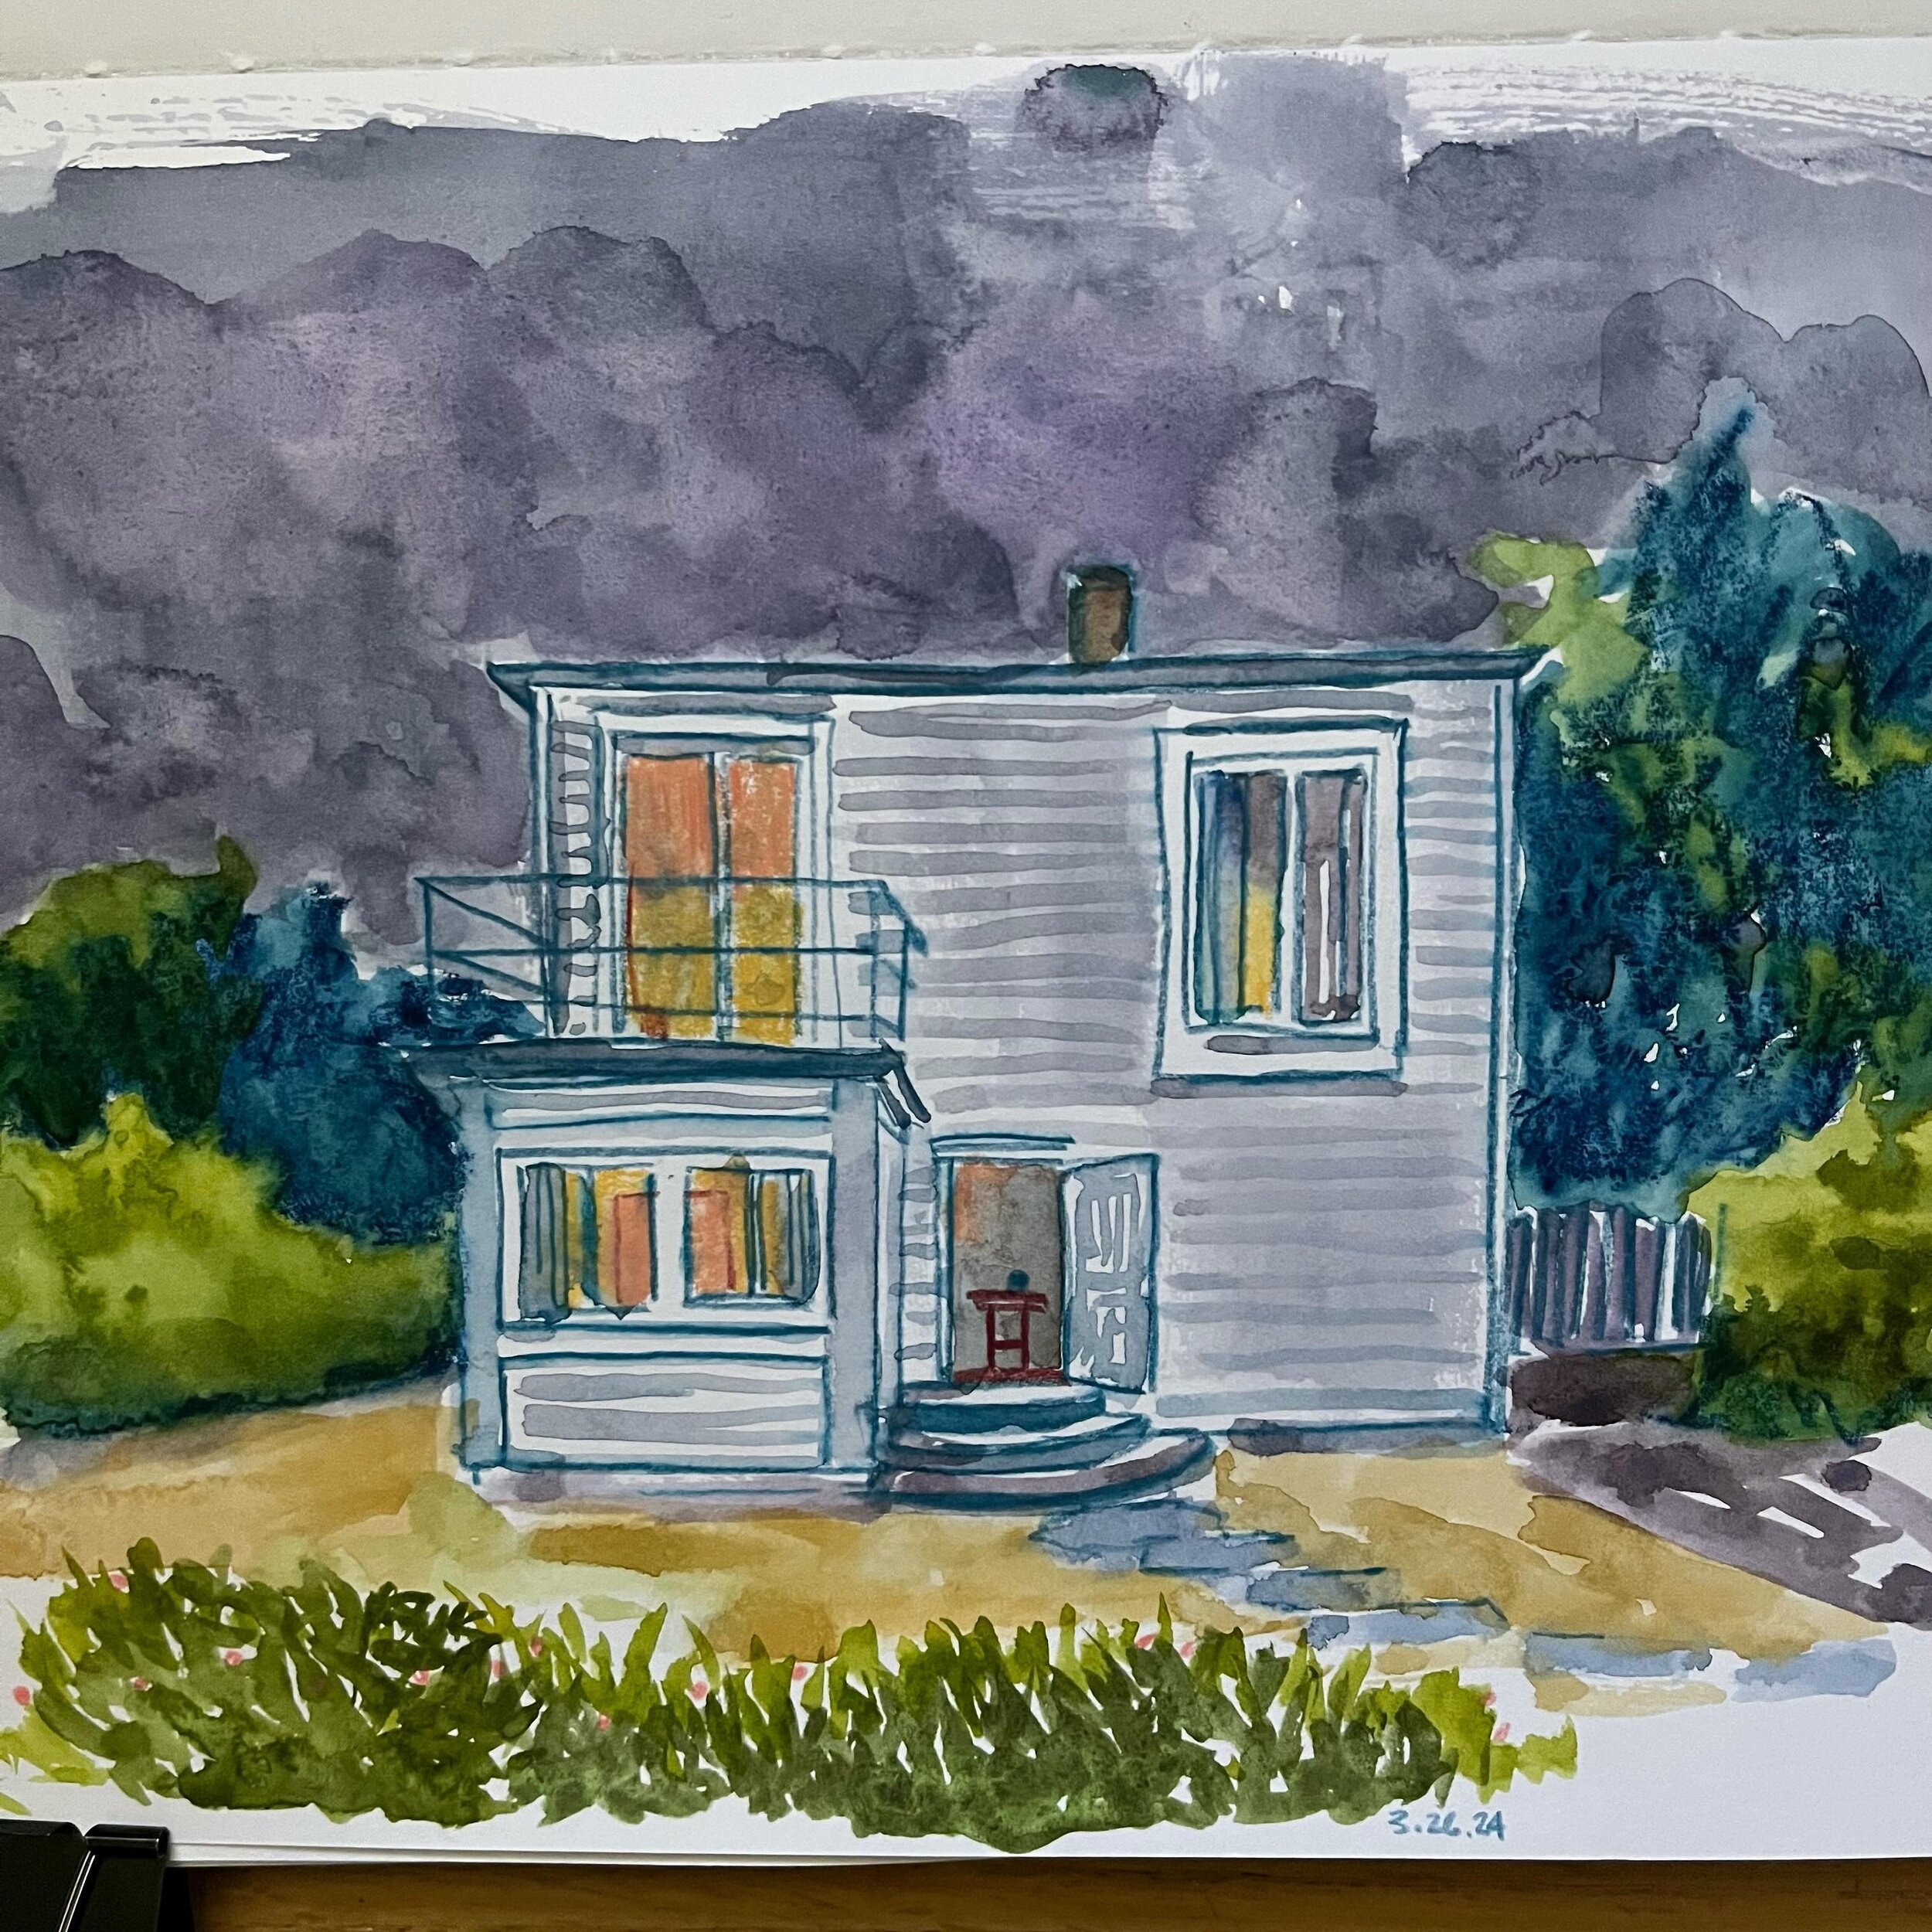 Dreamy sketch from last week. #sketchbook #dusk #landscape #suburbia #watercolor #neocolor2 #carandache #carandacheneocolor2 #carandachepencils #carandachemuseumaquarelle